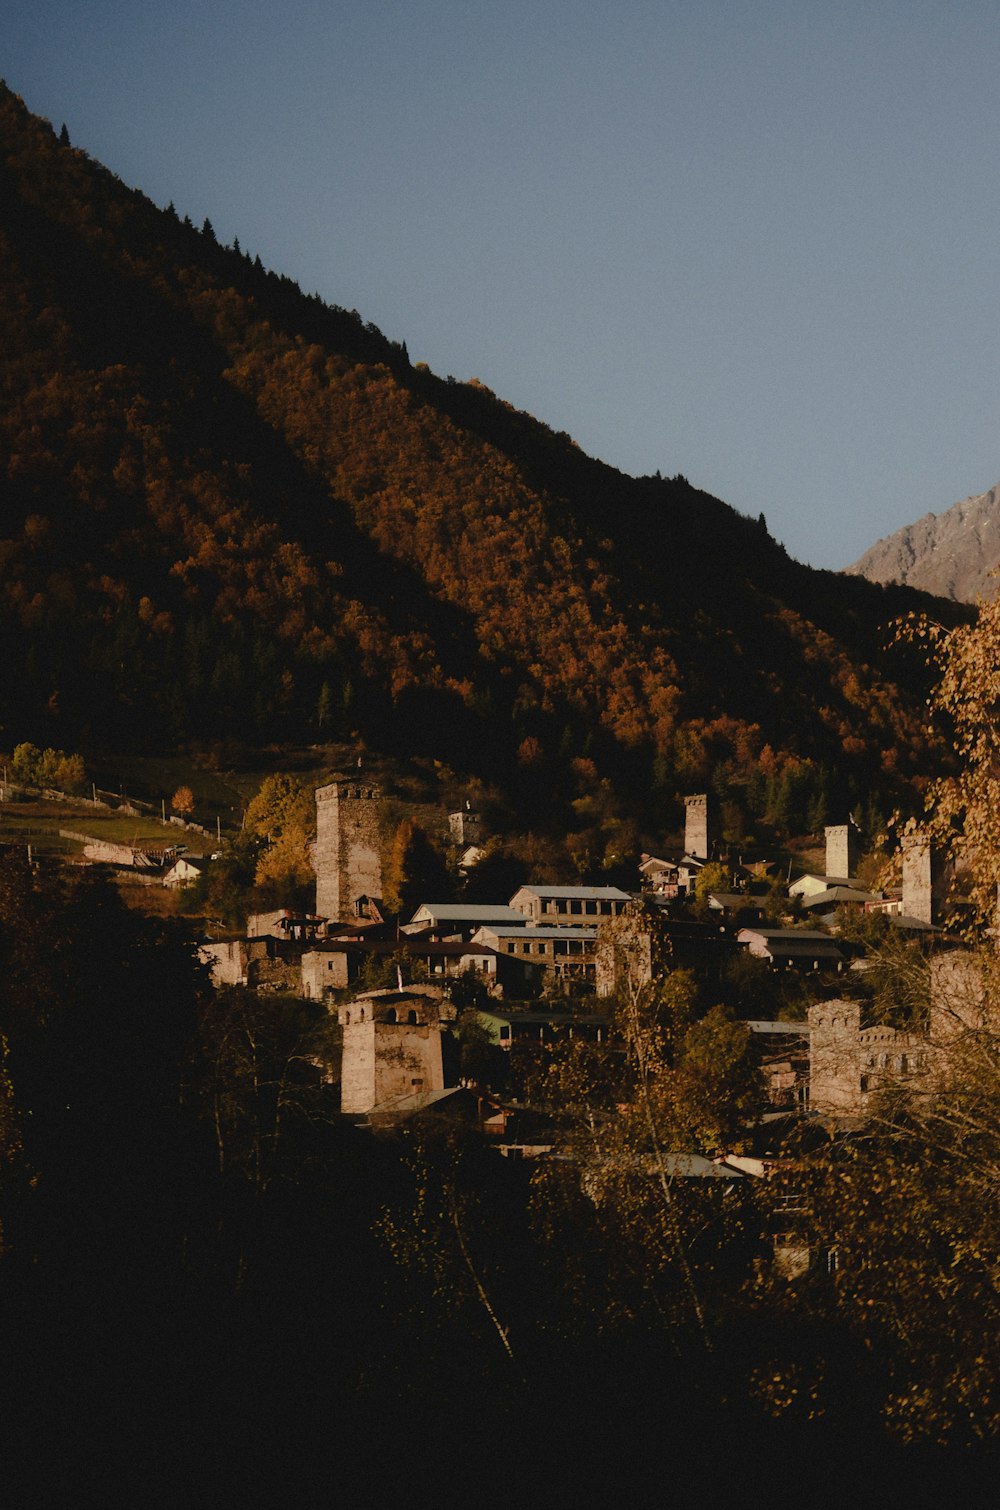 Blick auf eine kleine Stadt in den Bergen